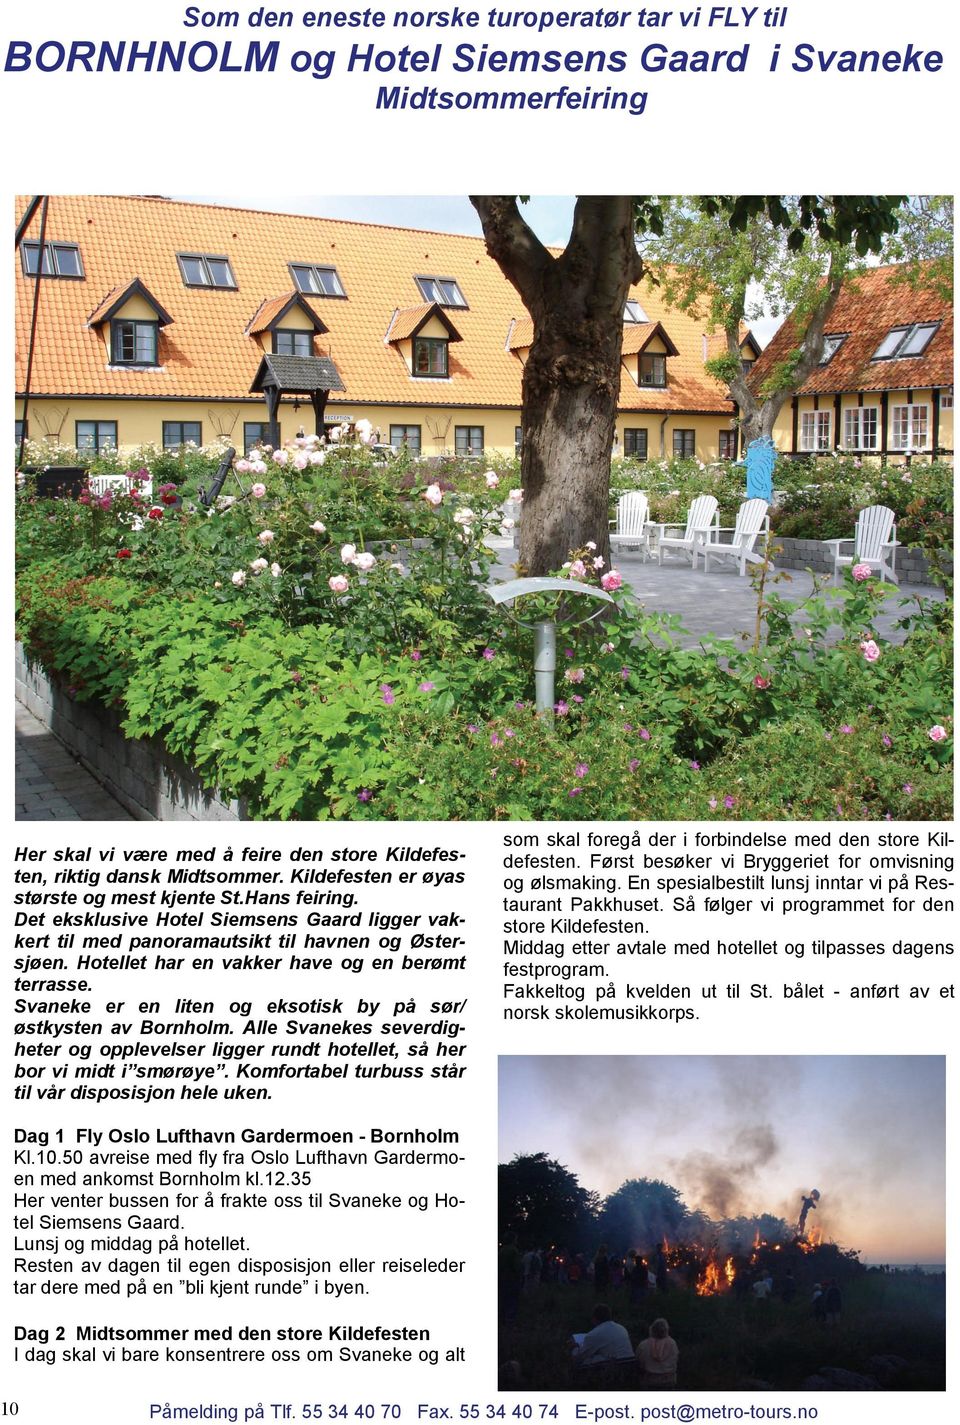 Hotellet har en vakker have og en berømt terrasse. Svaneke er en liten og eksotisk by på sør/ østkysten av Bornholm.